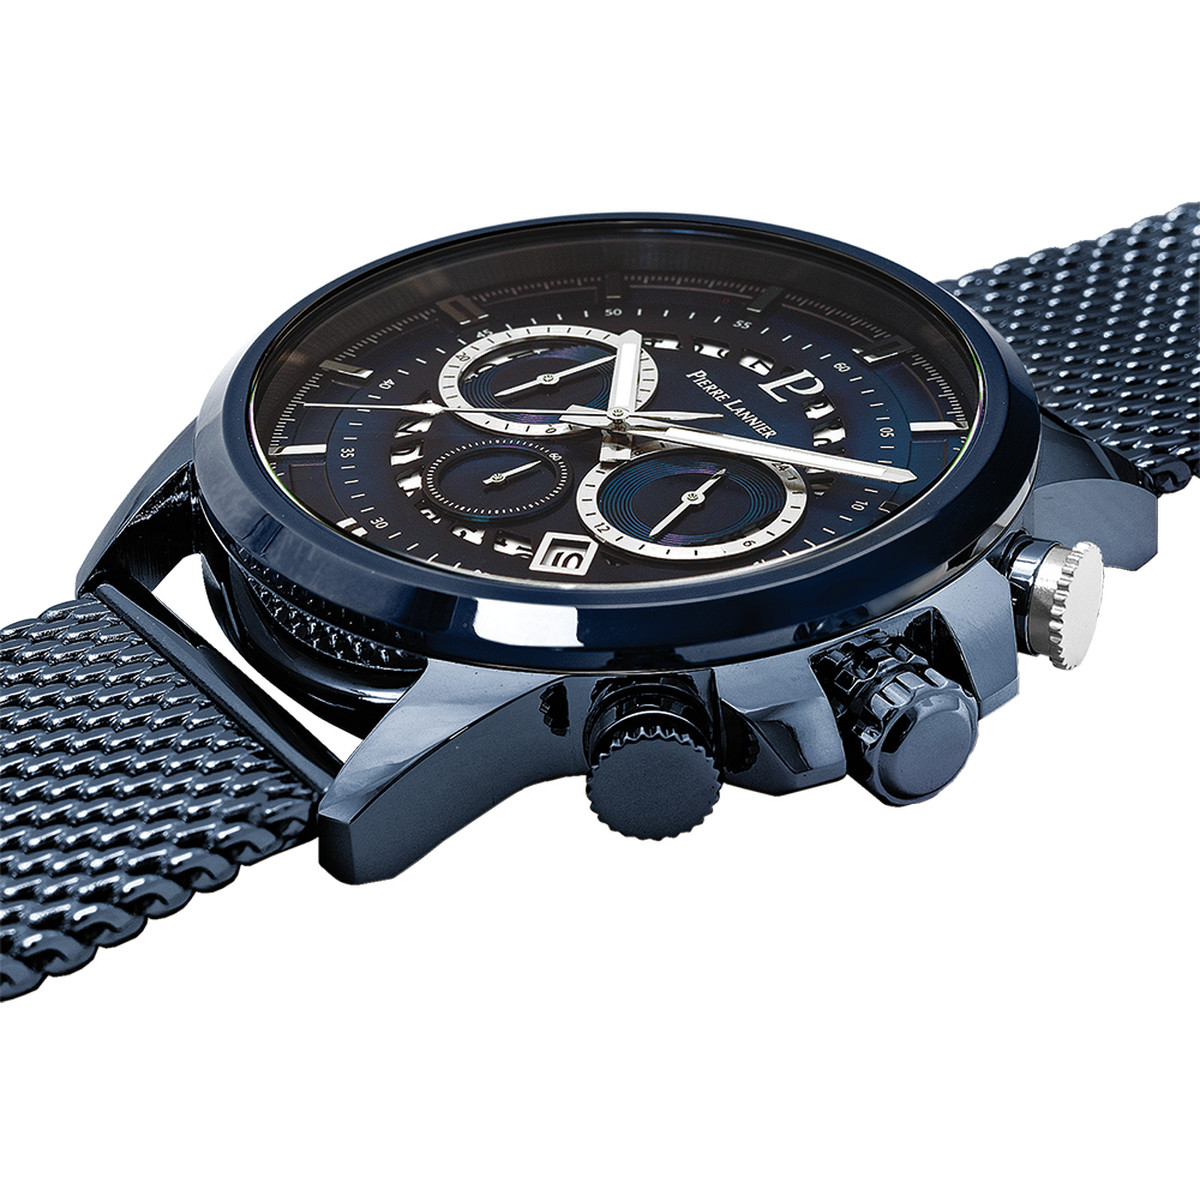 Montre PIERRE LANNIER Sentinelle homme chronographe bracelet acier bleu - vue 2